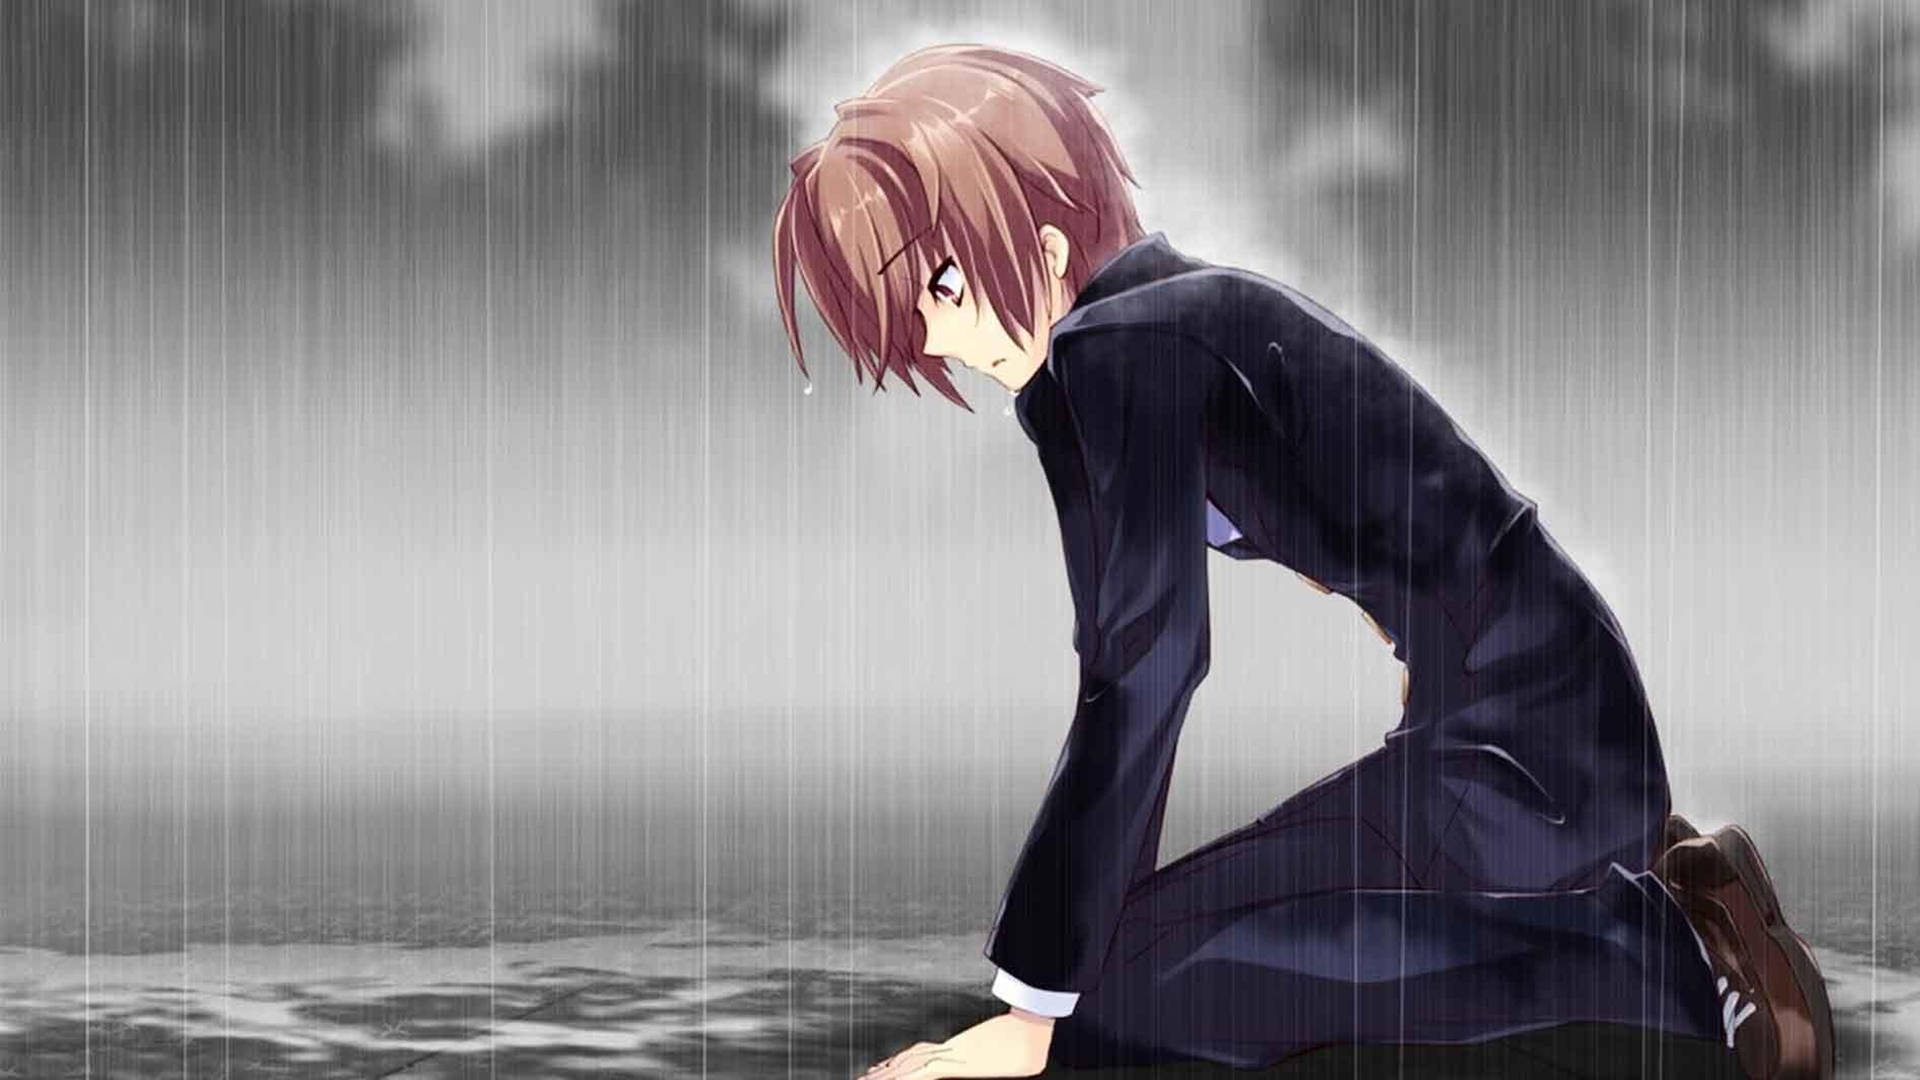 Sad Anime 4k Man On Knees Crying Background